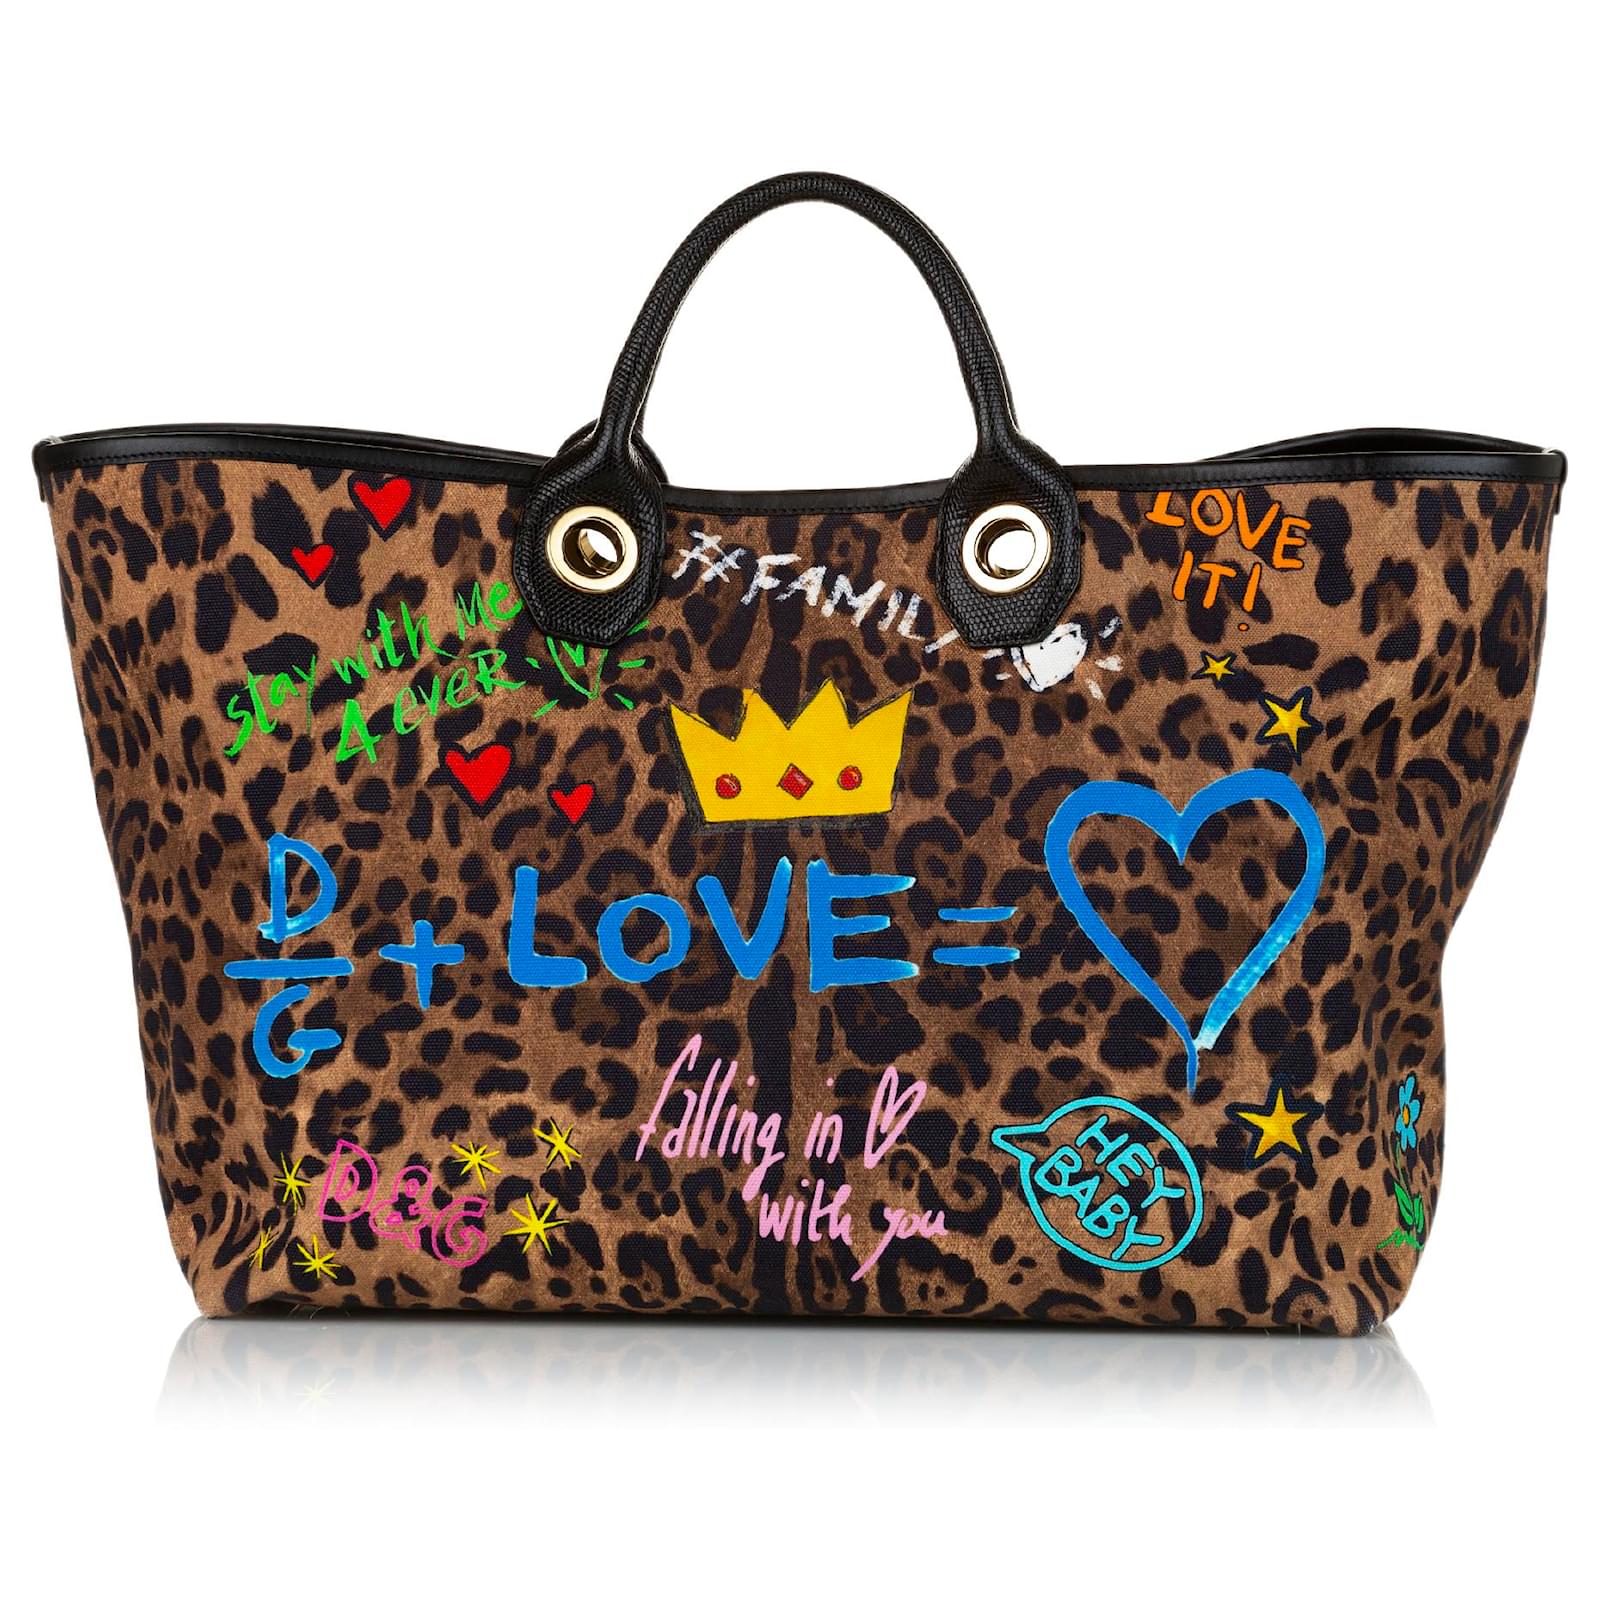 Dolce & Gabbana – Leopard Print Crossbody Bag – Queen Station